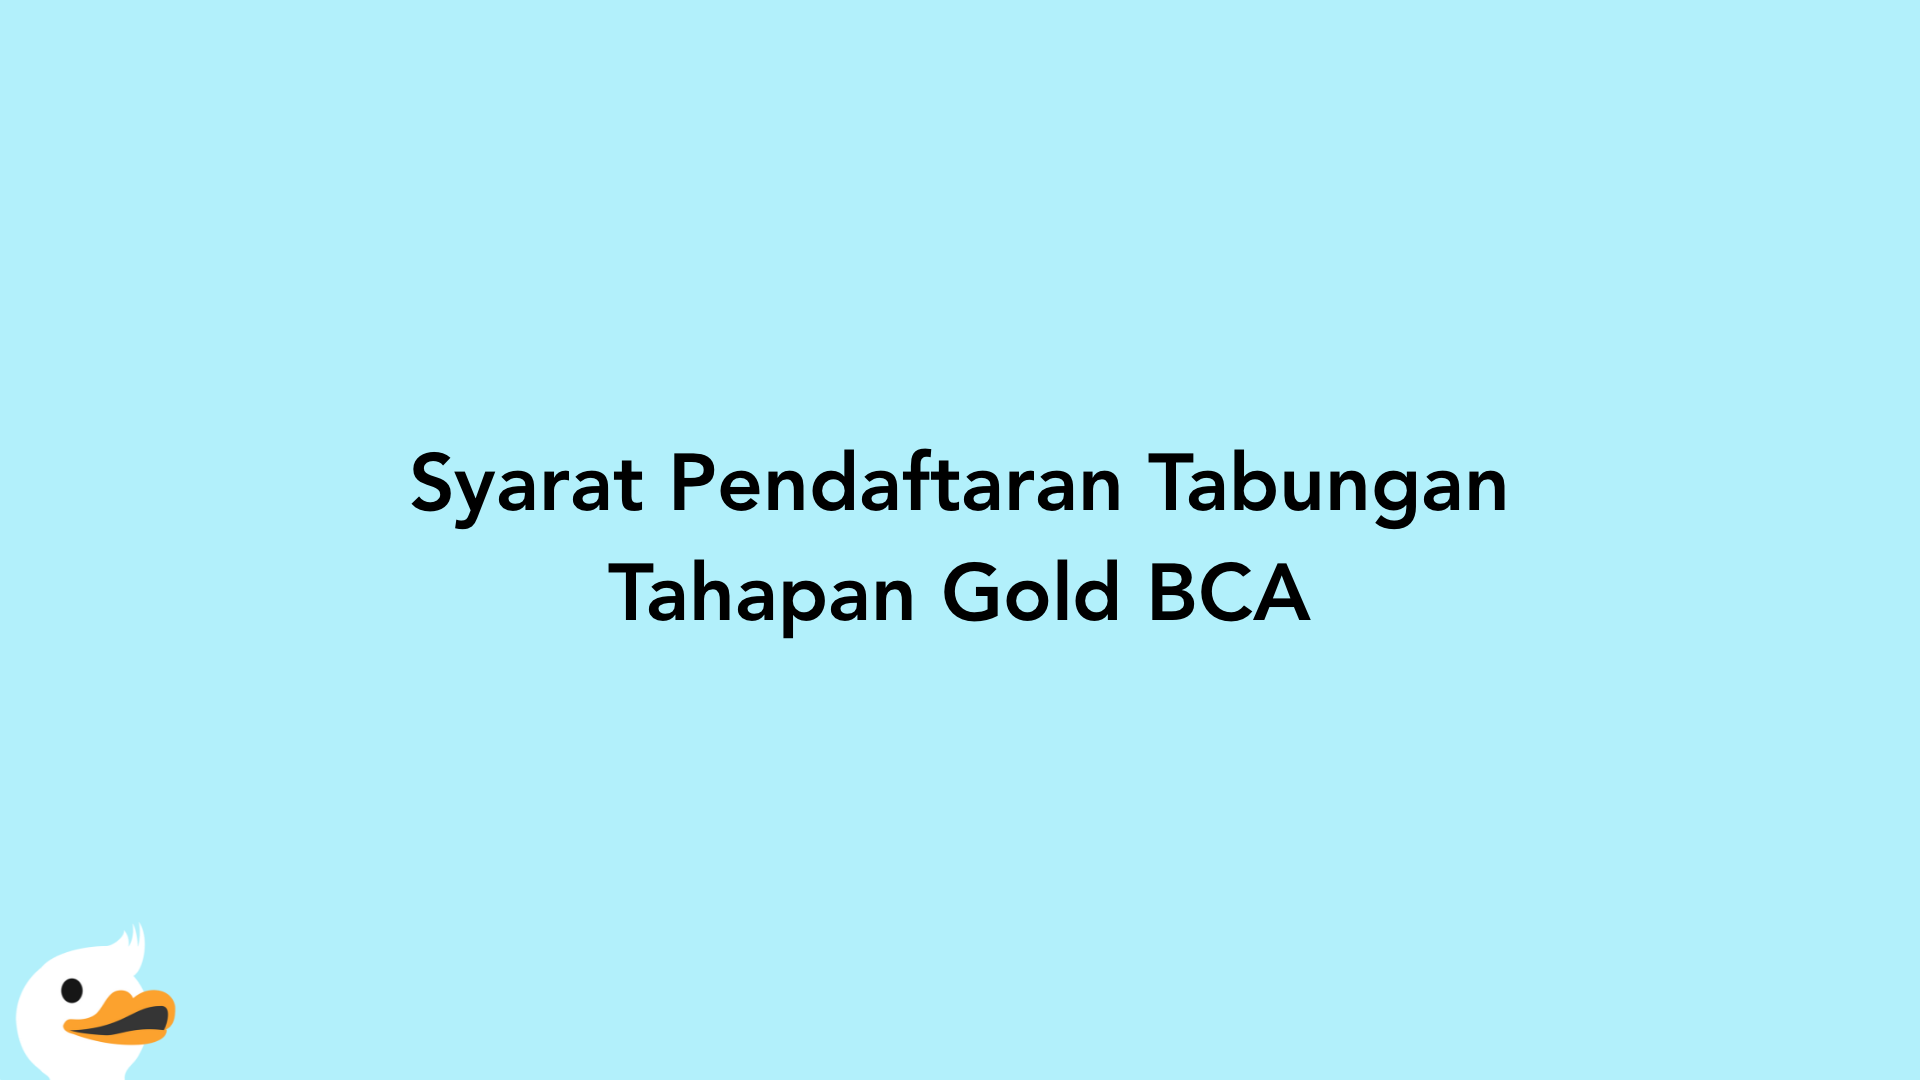 Syarat Pendaftaran Tabungan Tahapan Gold BCA